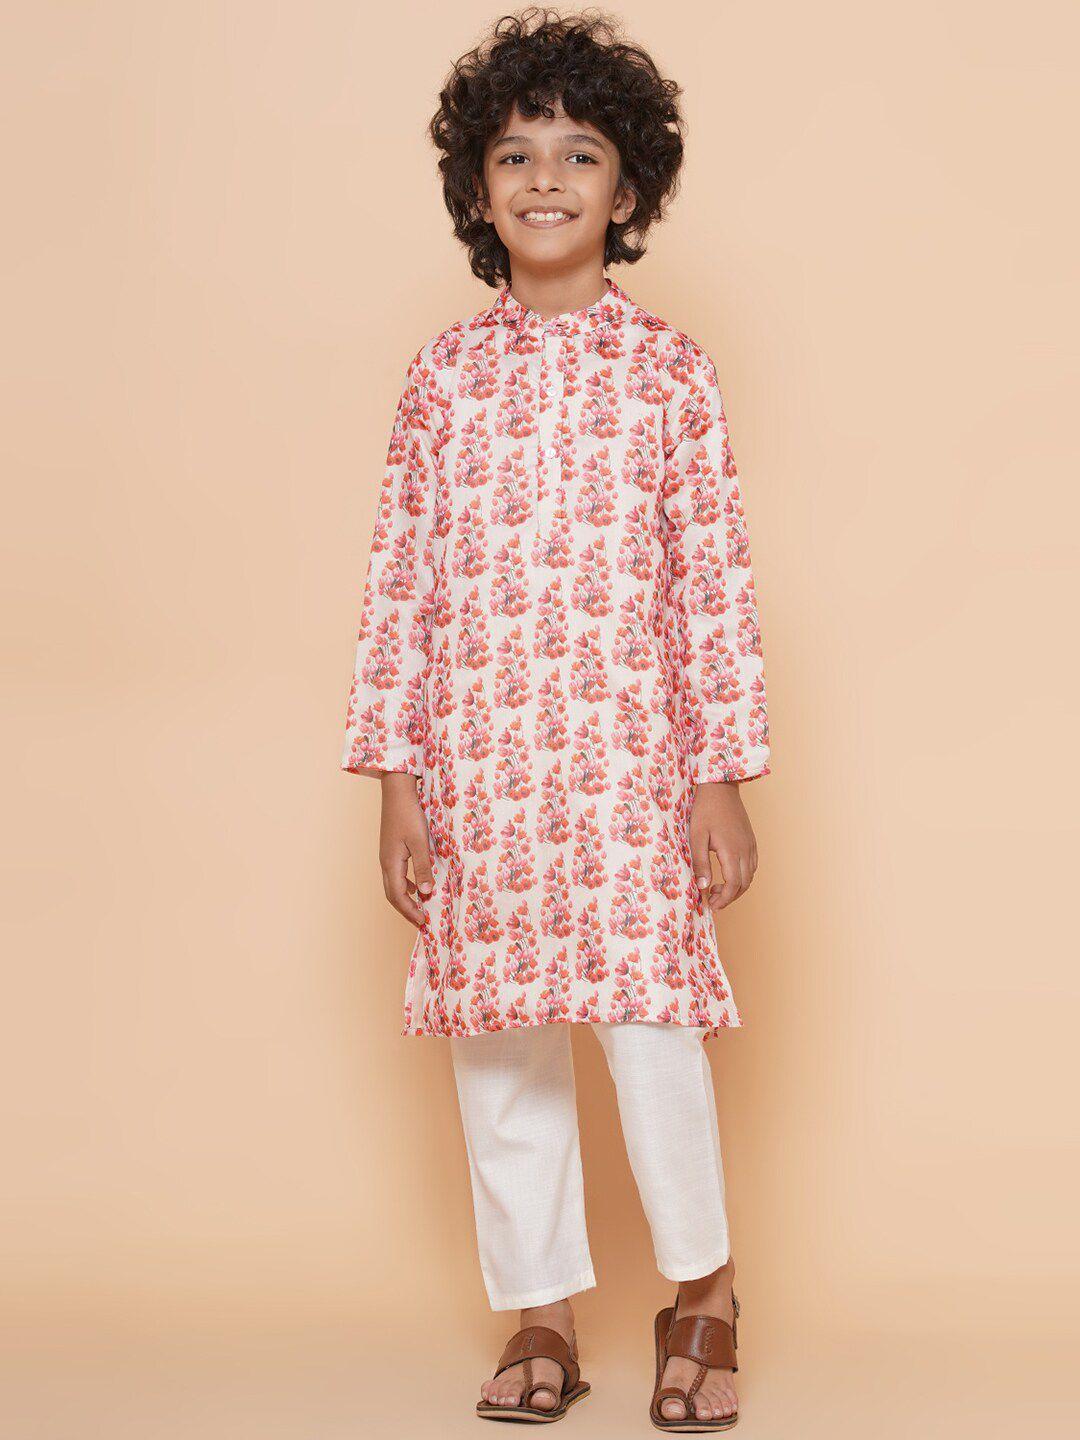 bittu by bhama boys floral printed straight kurta with pyjamas